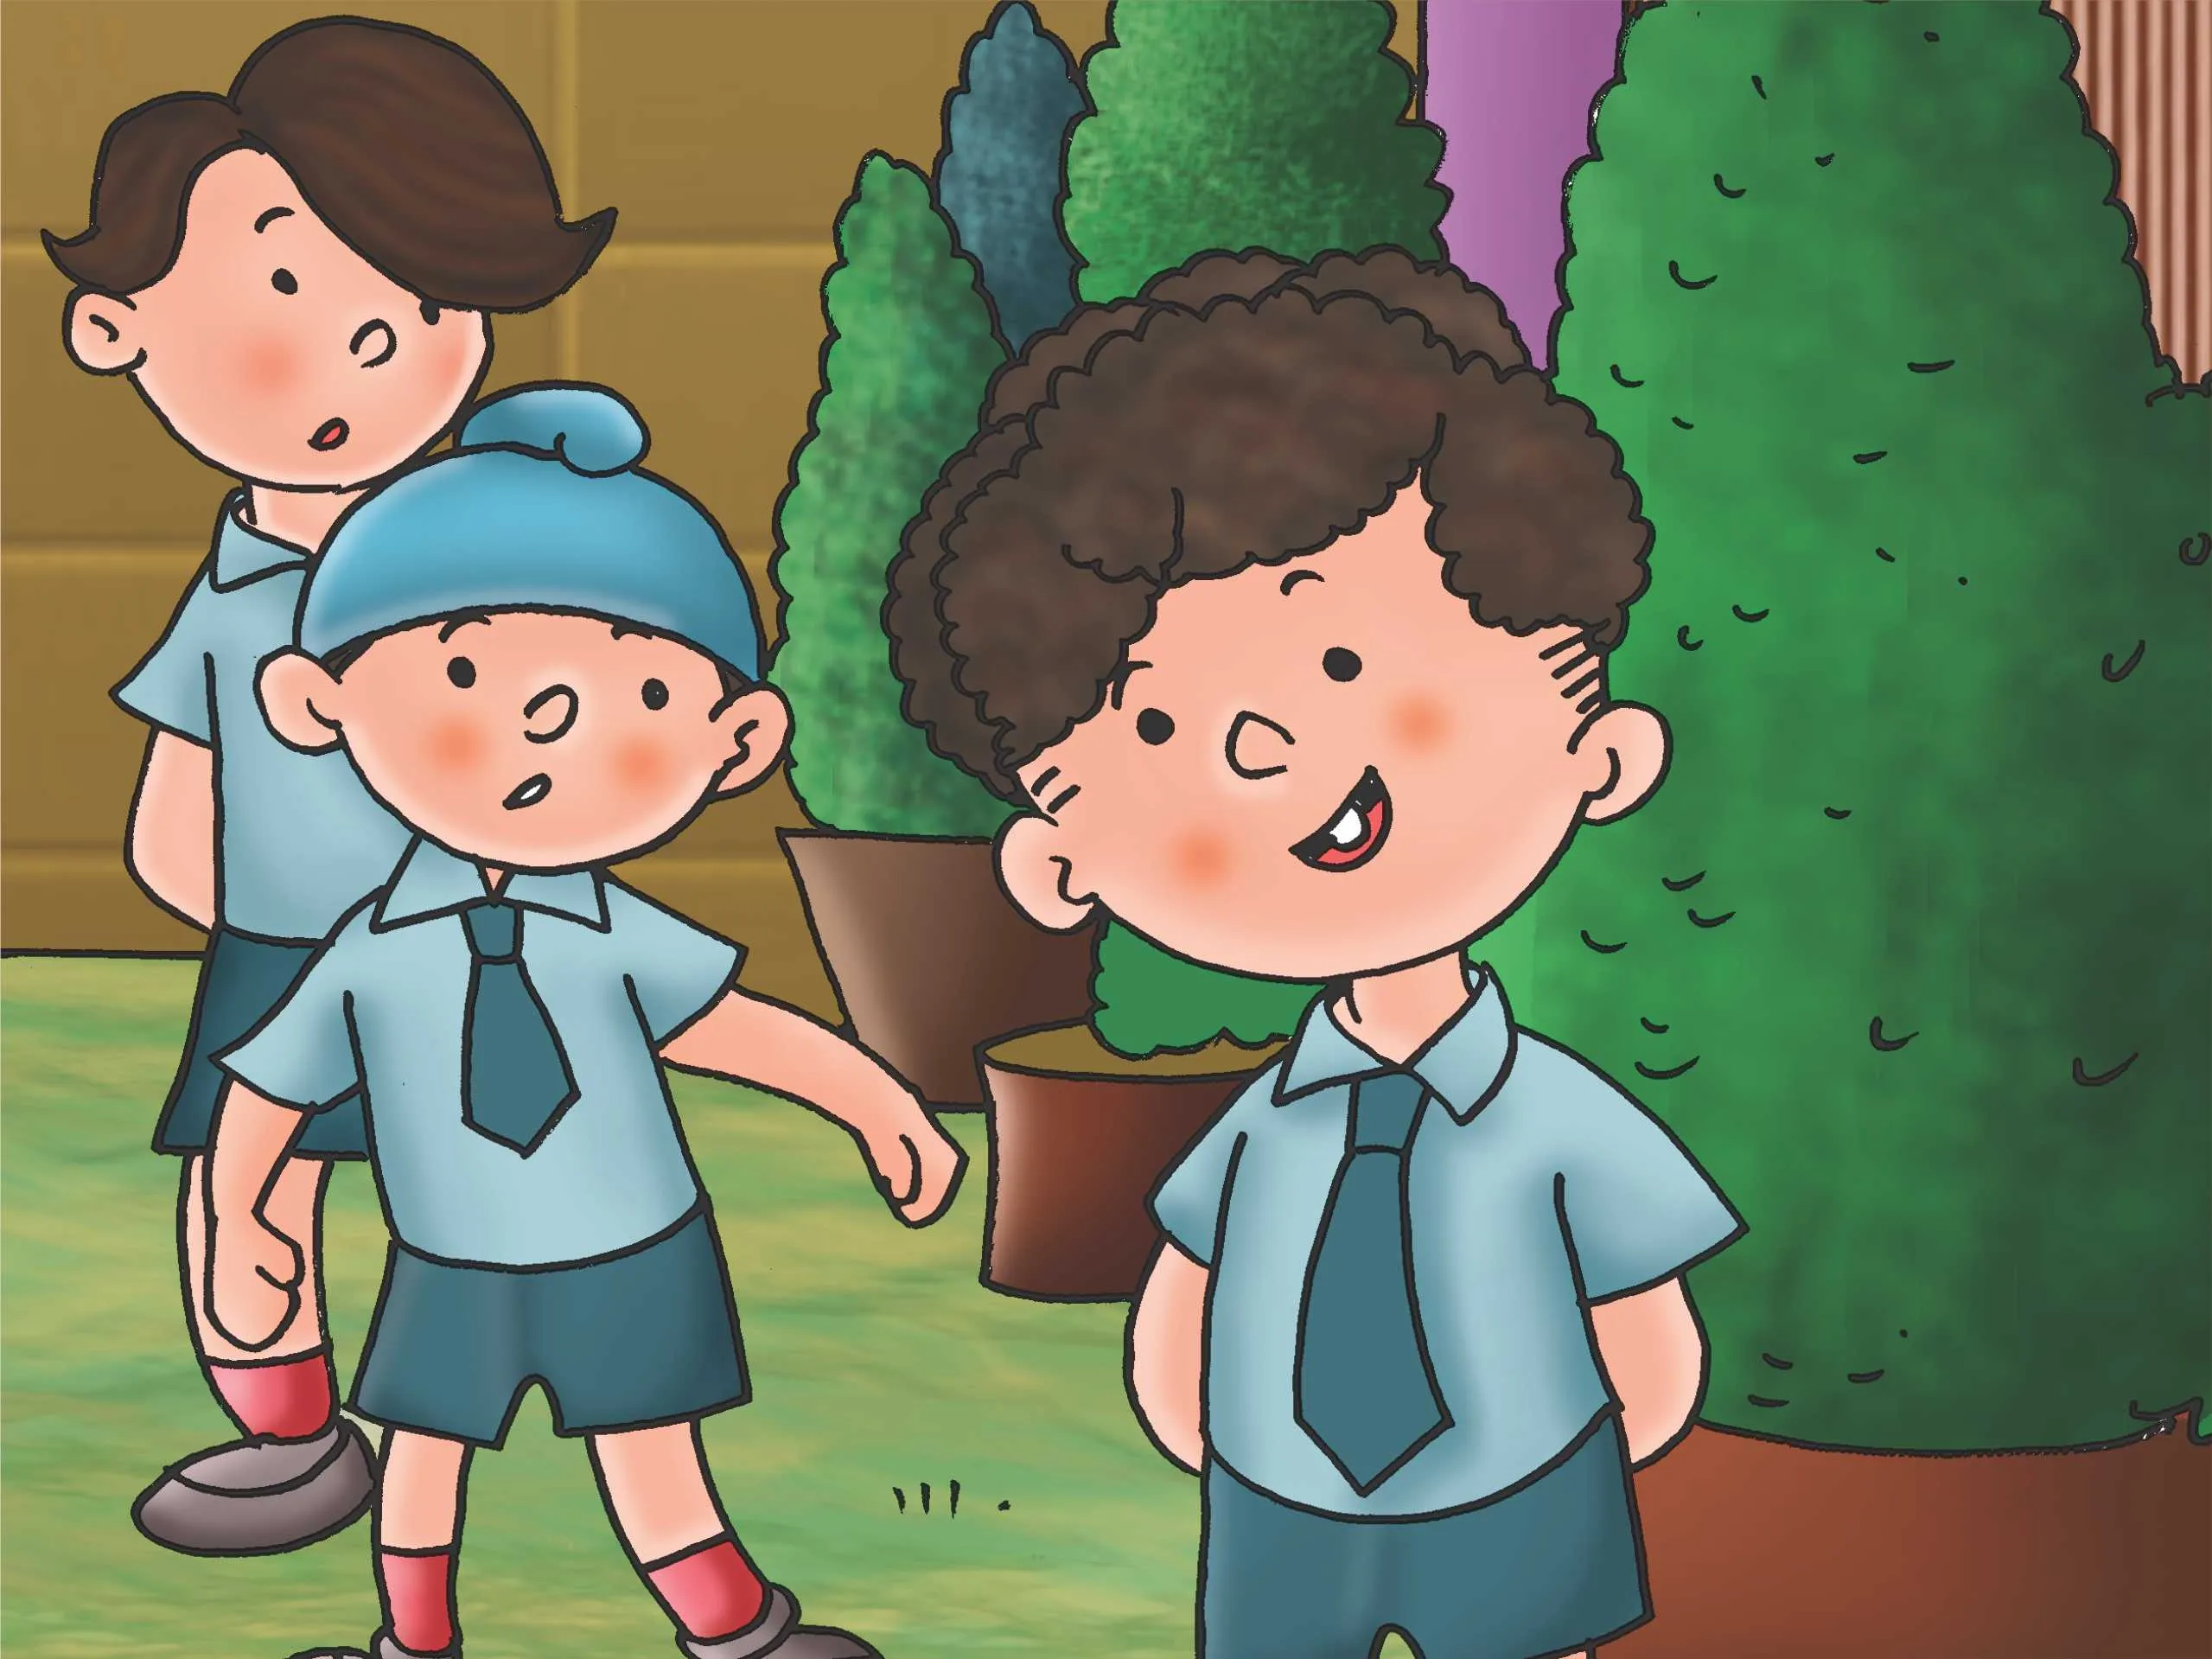 Kids In School cartoon image